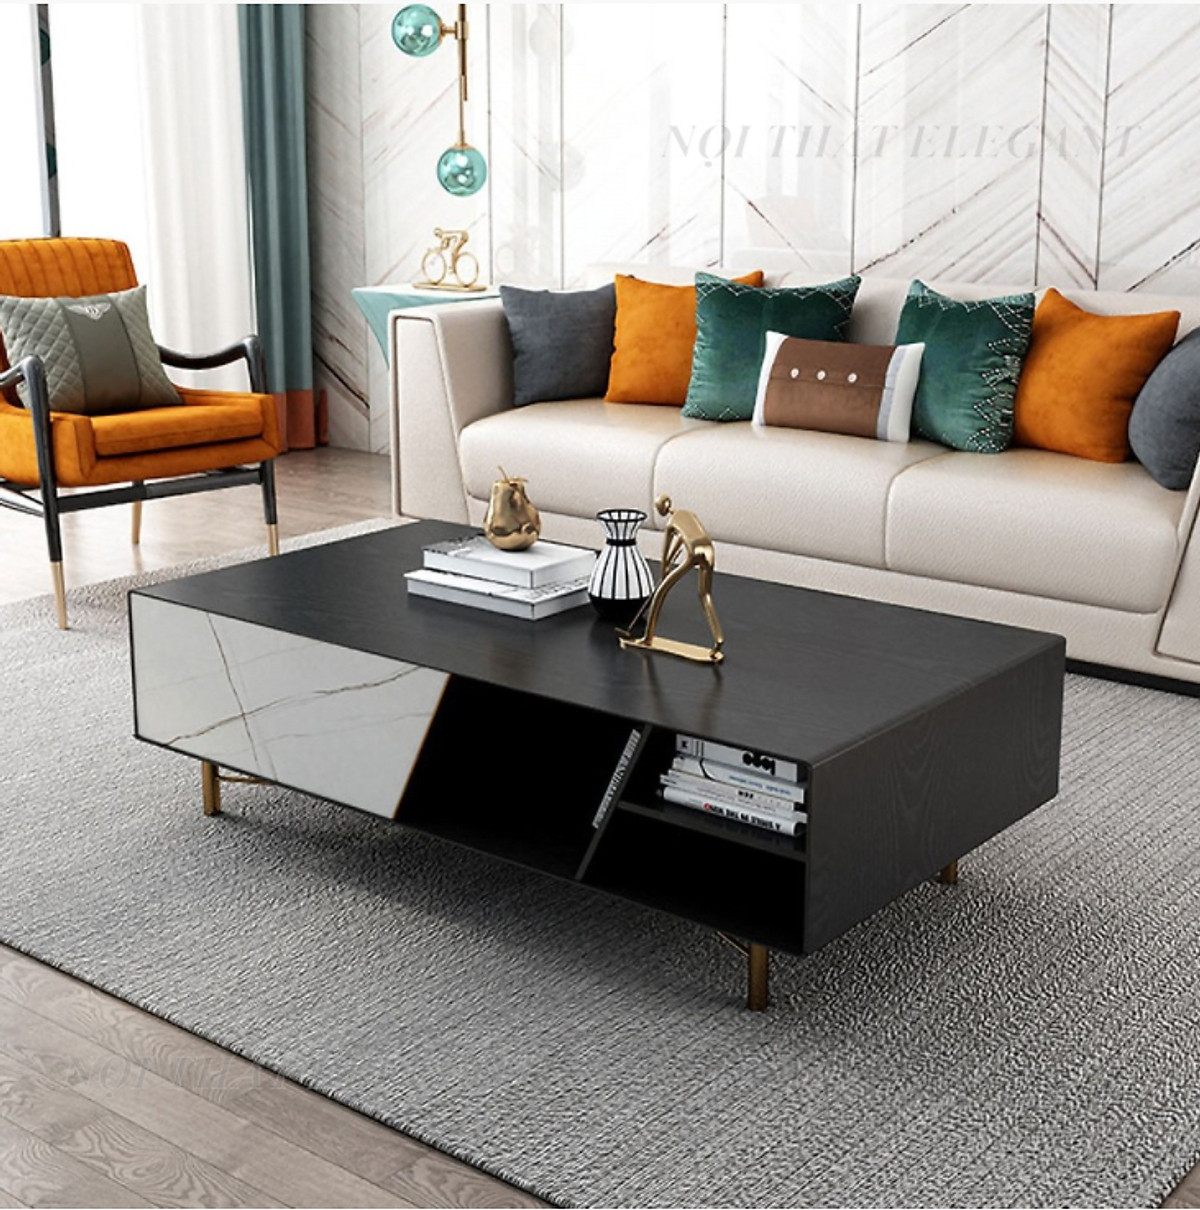 Mua Bàn Sofa/ bàn trà hình chữ nhật cao cấp, gỗ Laminate, chân kim loại sơn  tĩnh điện, có một ngăn kéo – EL-BT15 tại Nội thất Elegant